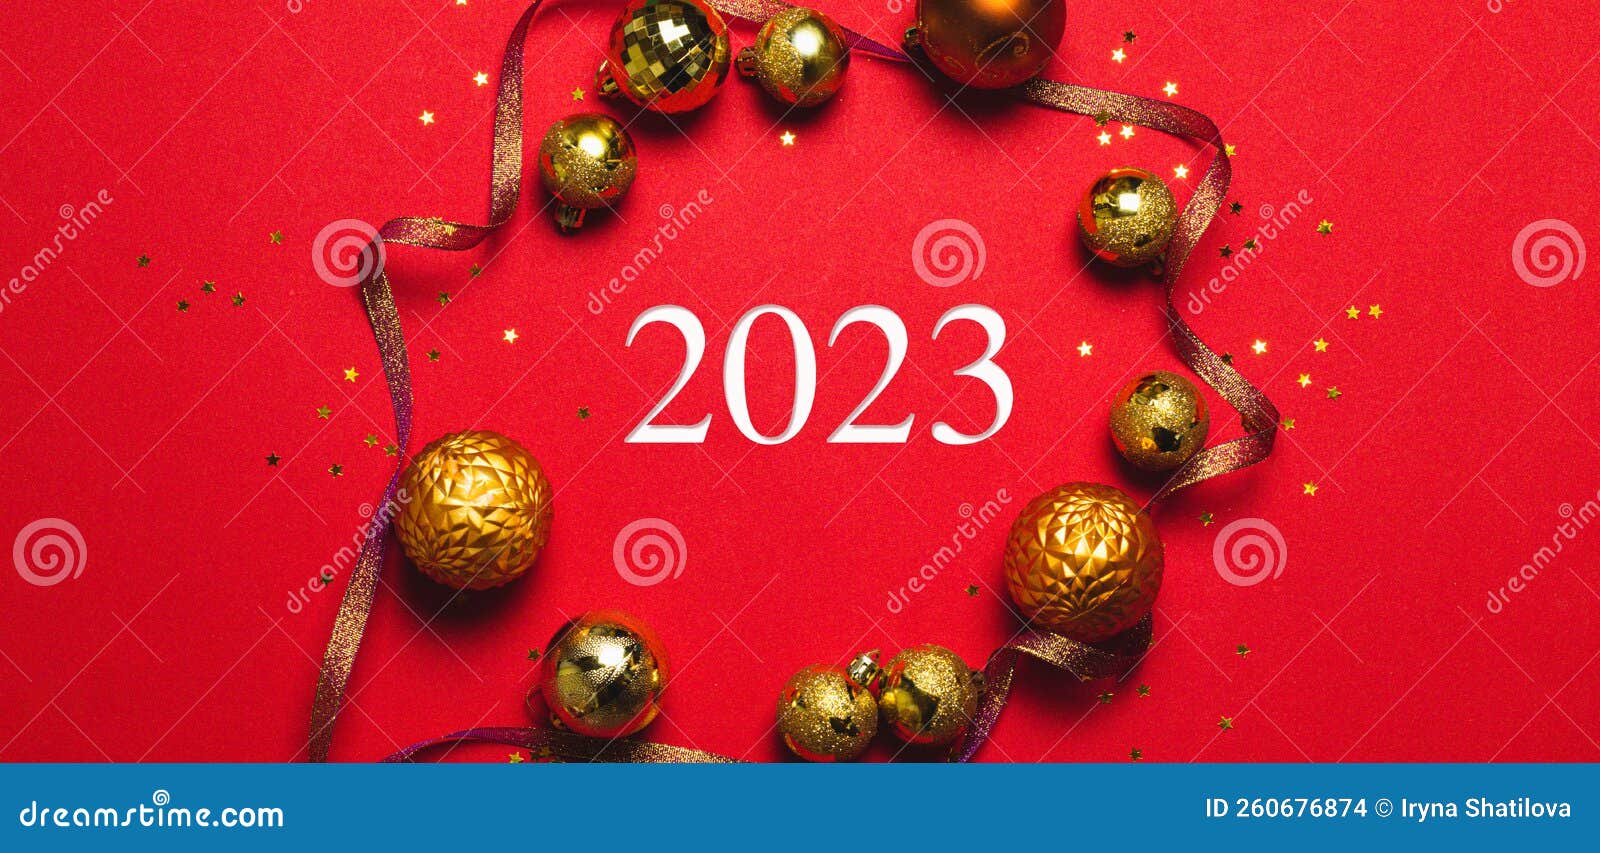 Một lời chúc Giáng sinh vui vẻ và kỳ nghỉ Tết Âm lịch 2024 sẽ mang đến niềm vui và hạnh phúc cho người nhận. Hãy chọn cho mình những từ ngữ tinh tế và đầy ý nghĩa để truyền đạt tình cảm của mình đến người thân và bạn bè trong dịp lễ này.